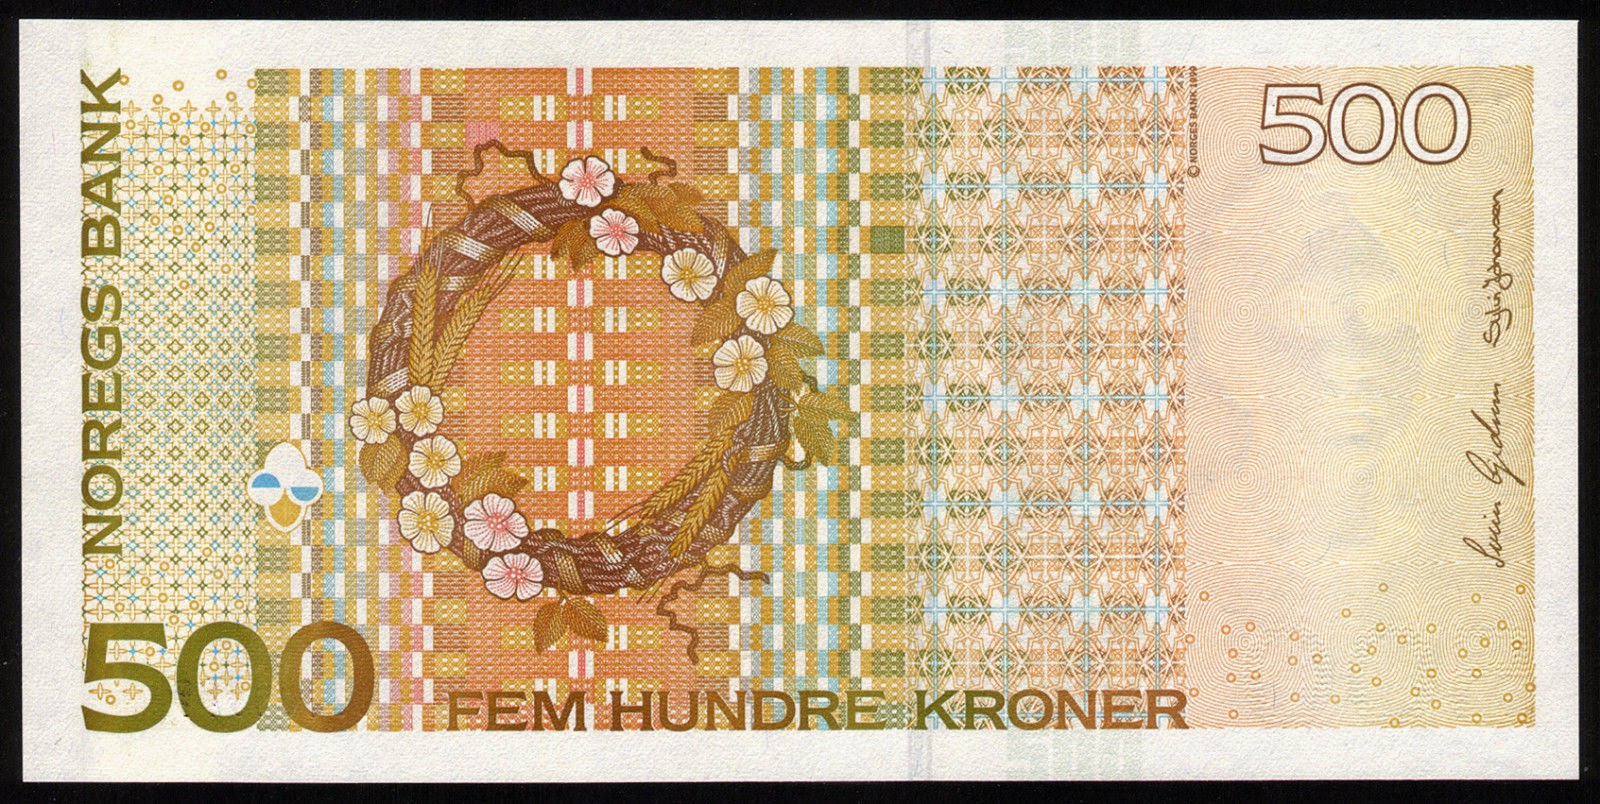 Norwegian Banknotes 500 Norwegian Kroner note